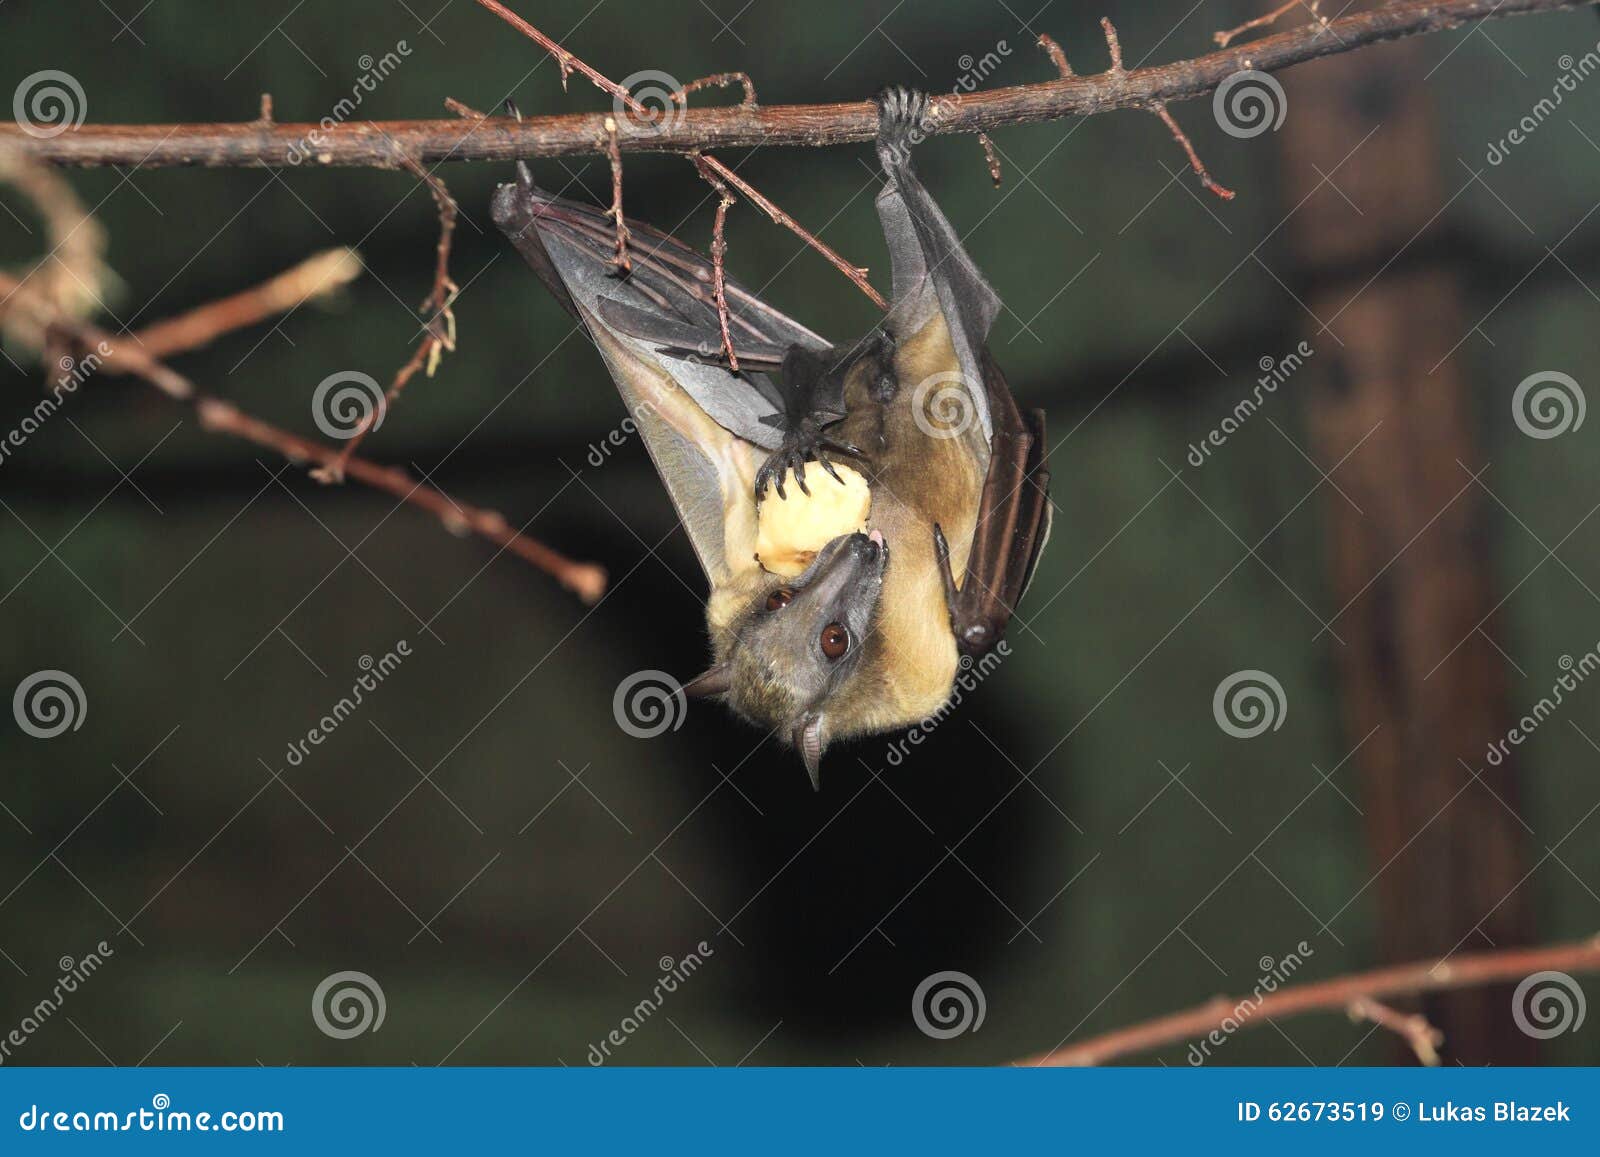 straw-coloured fruit bat